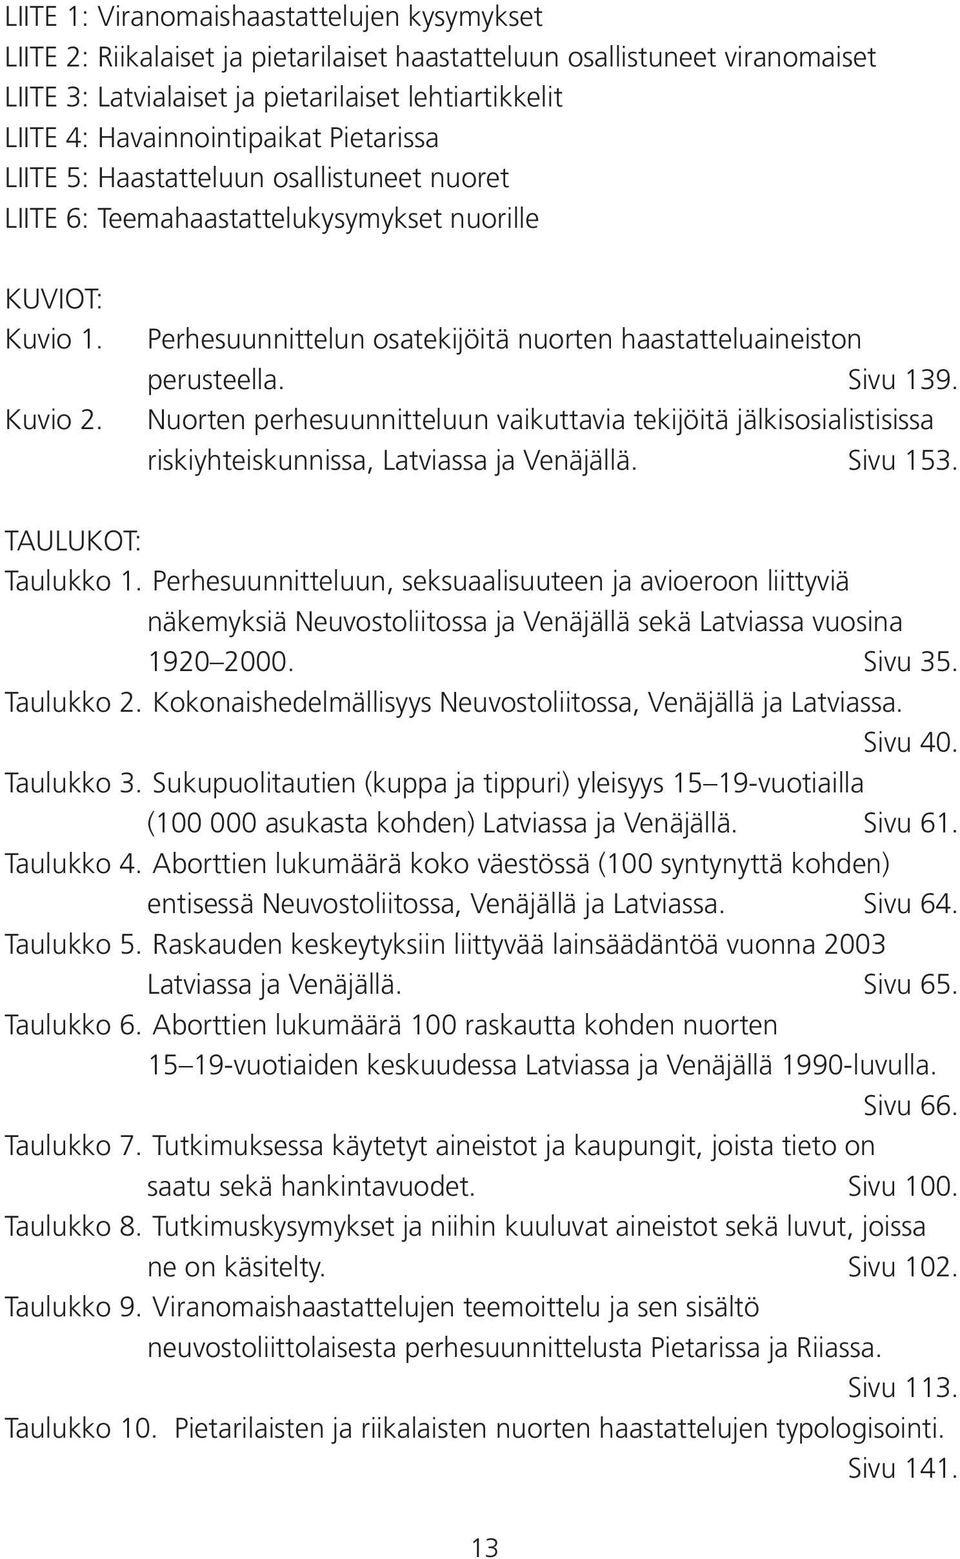 Perhesuunnittelun osatekijöitä nuorten haastatteluaineiston perusteella. Sivu 139. Nuorten perhesuunnitteluun vaikuttavia tekijöitä jälkisosialistisissa riskiyhteiskunnissa, Latviassa ja Venäjällä.